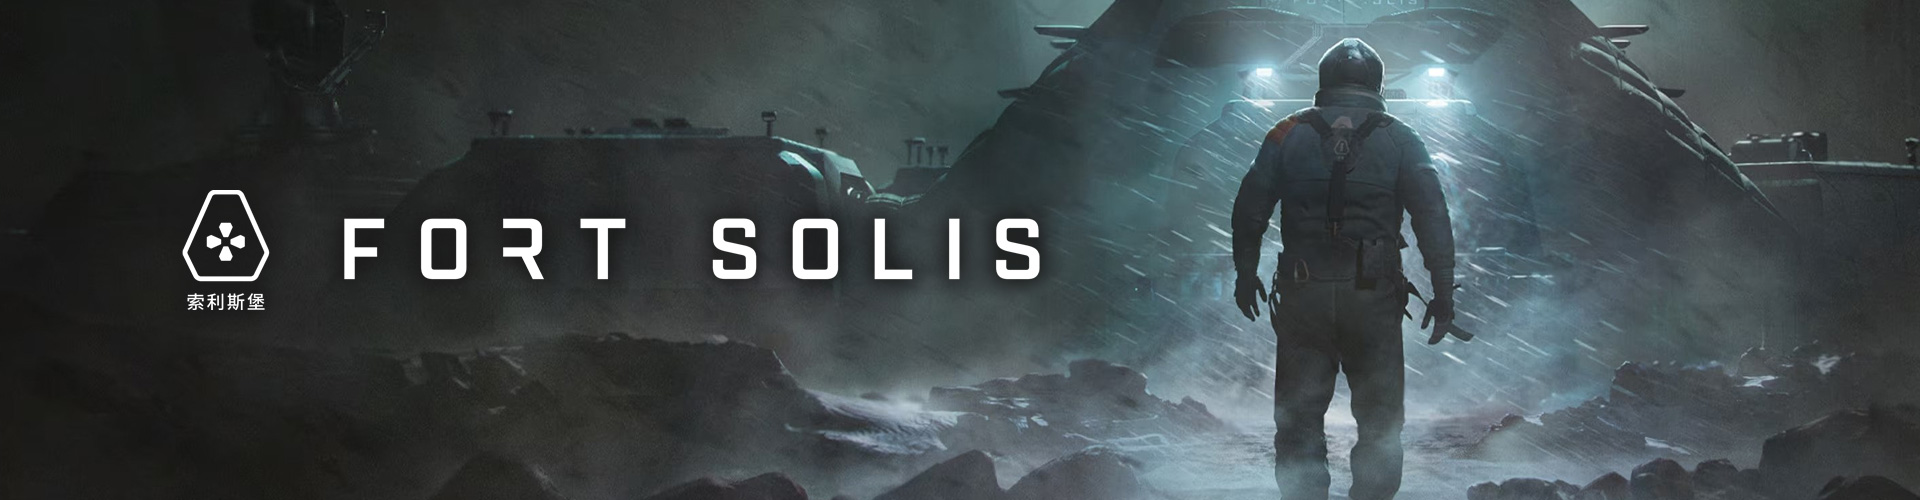 Fort Solis: een thriller van horror en science fiction